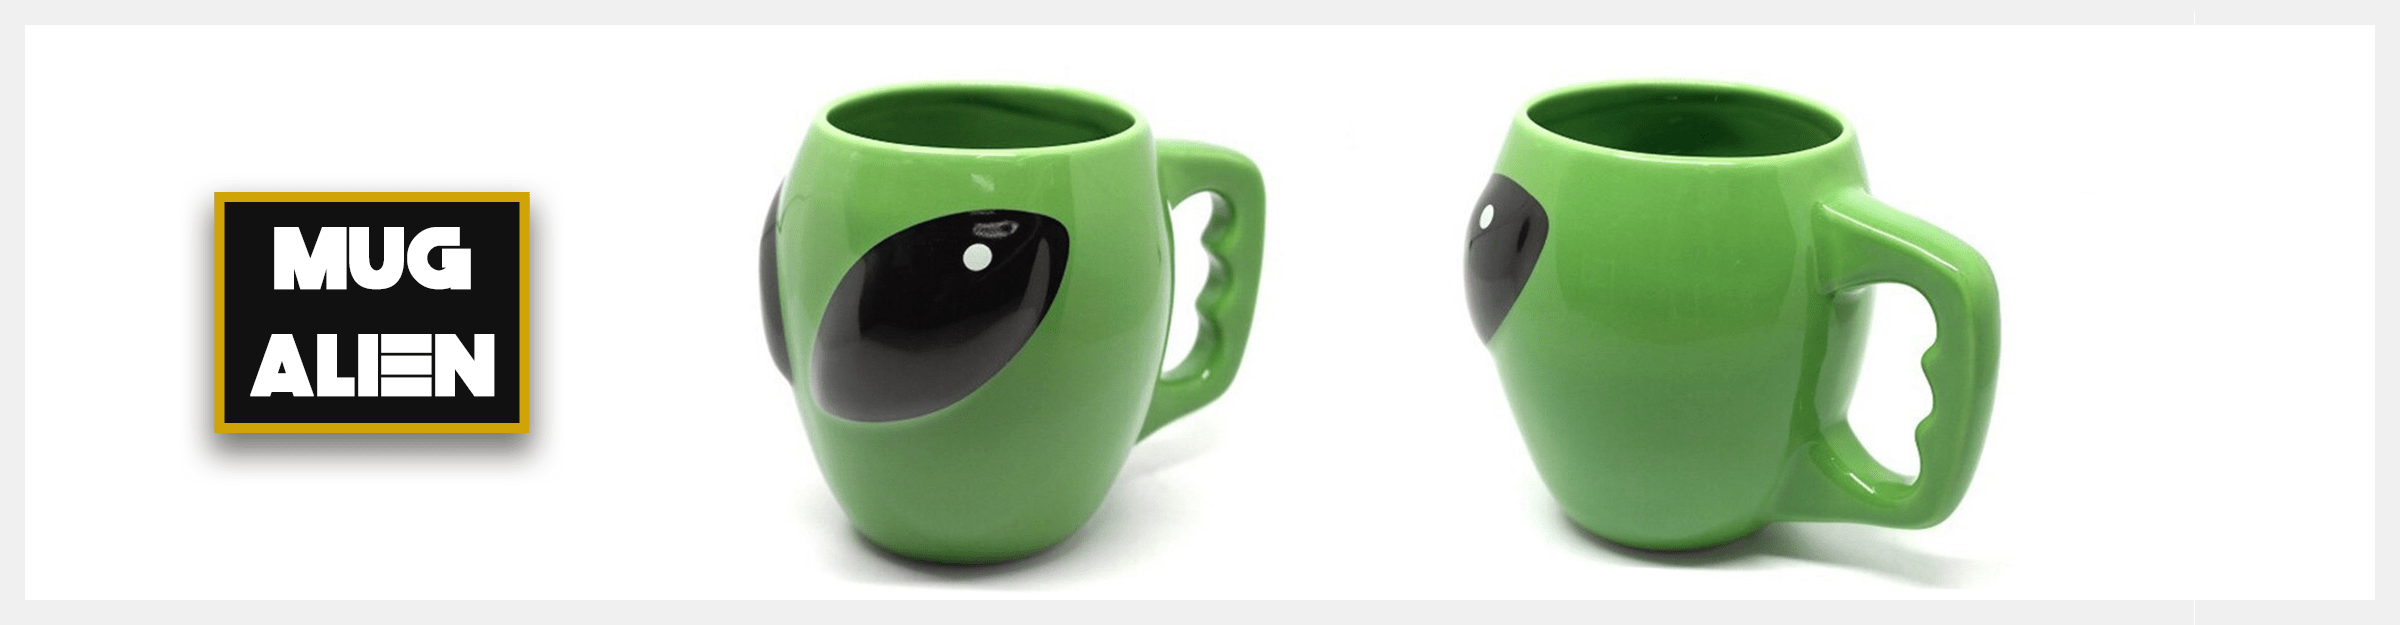 mug alien extraterrestre